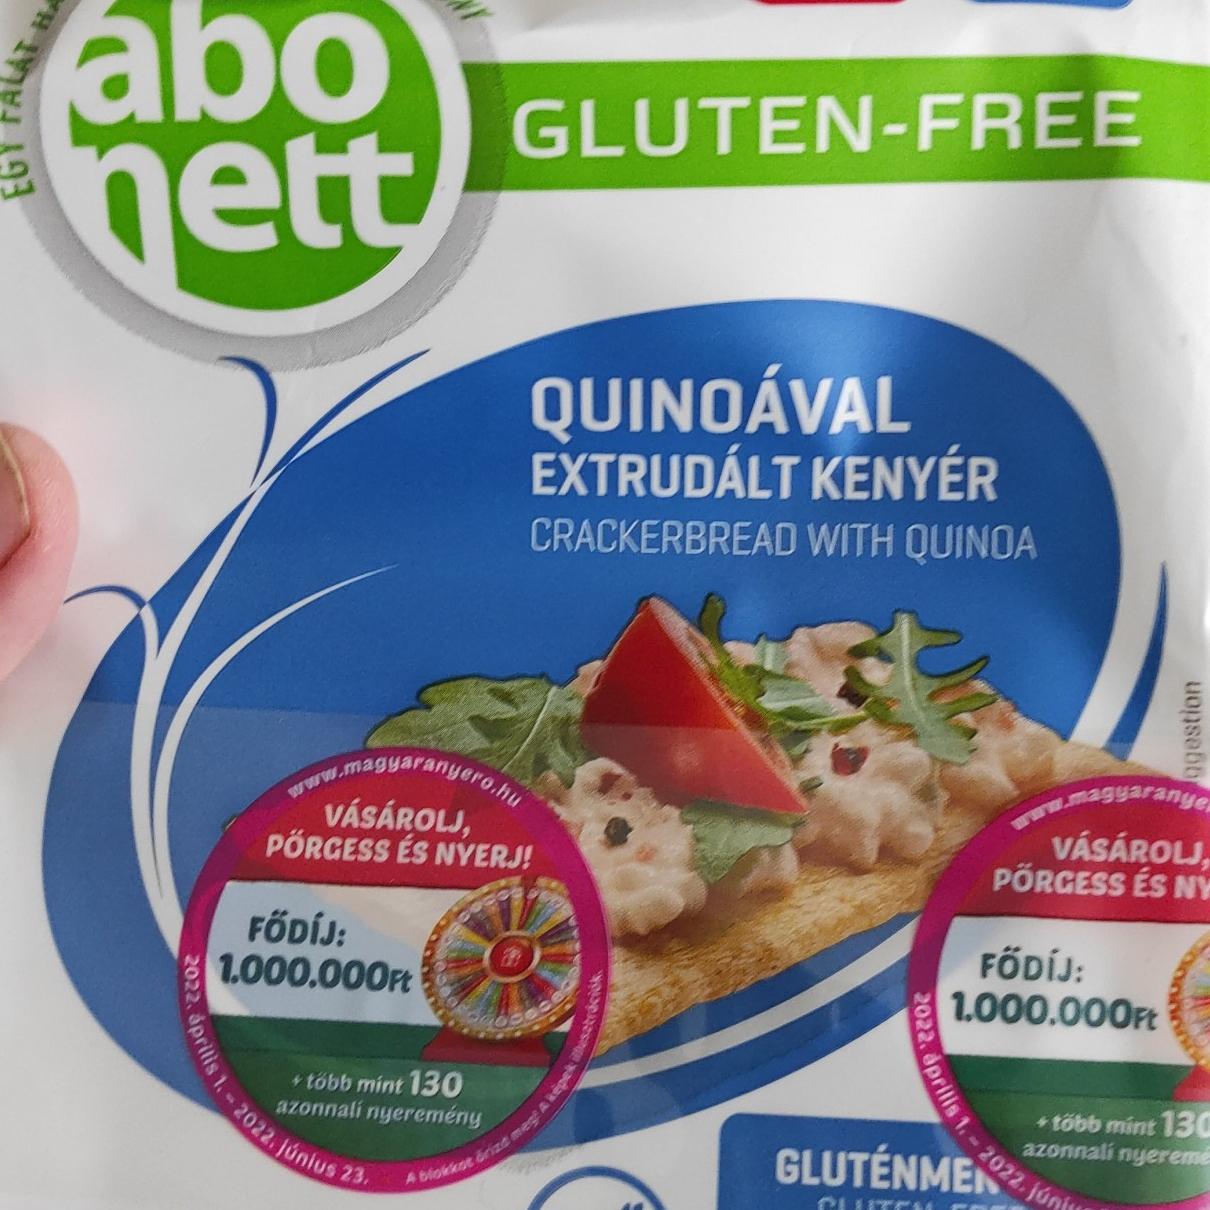 Fotografie - Quinoával extrudált kenyér Gluten-free Abonett